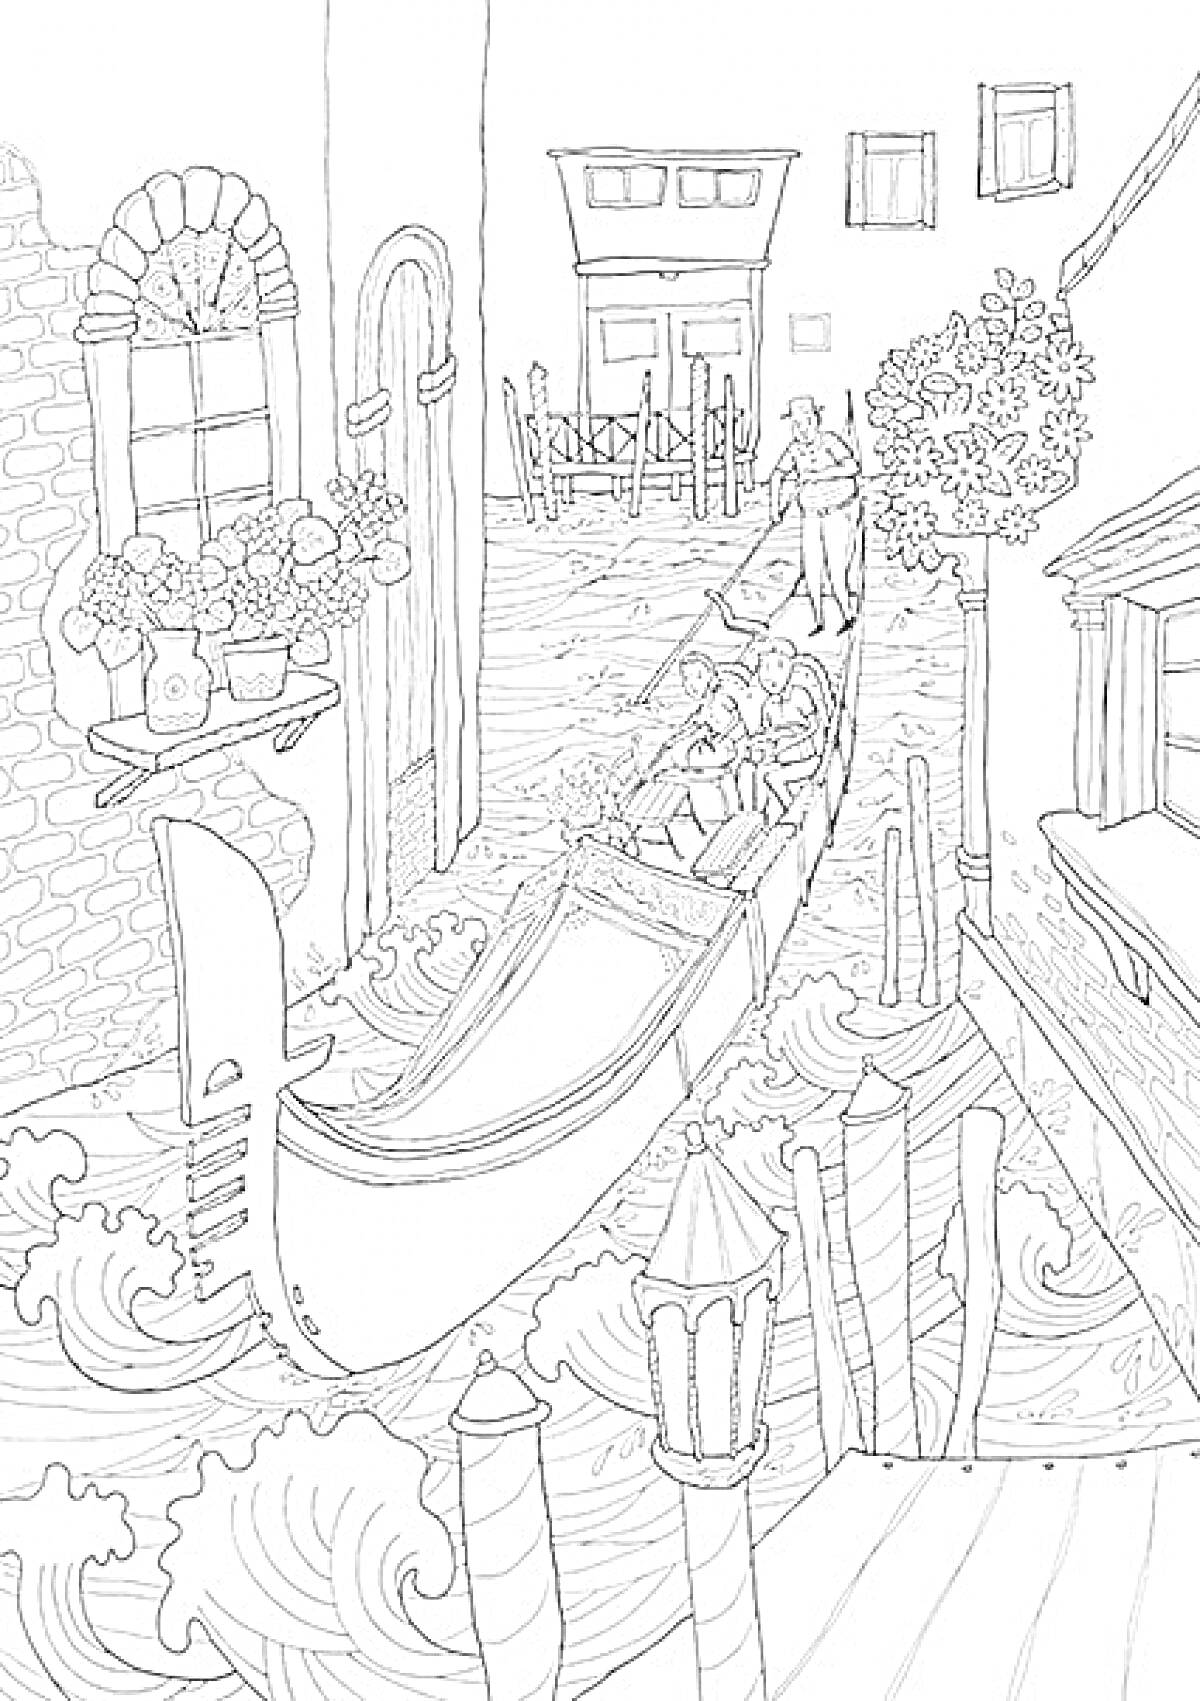 Раскраска Гондола на канале в Венеции с гондольером и пассажирами, цветы на подоконниках, здания вдоль канала, улица с пешеходами